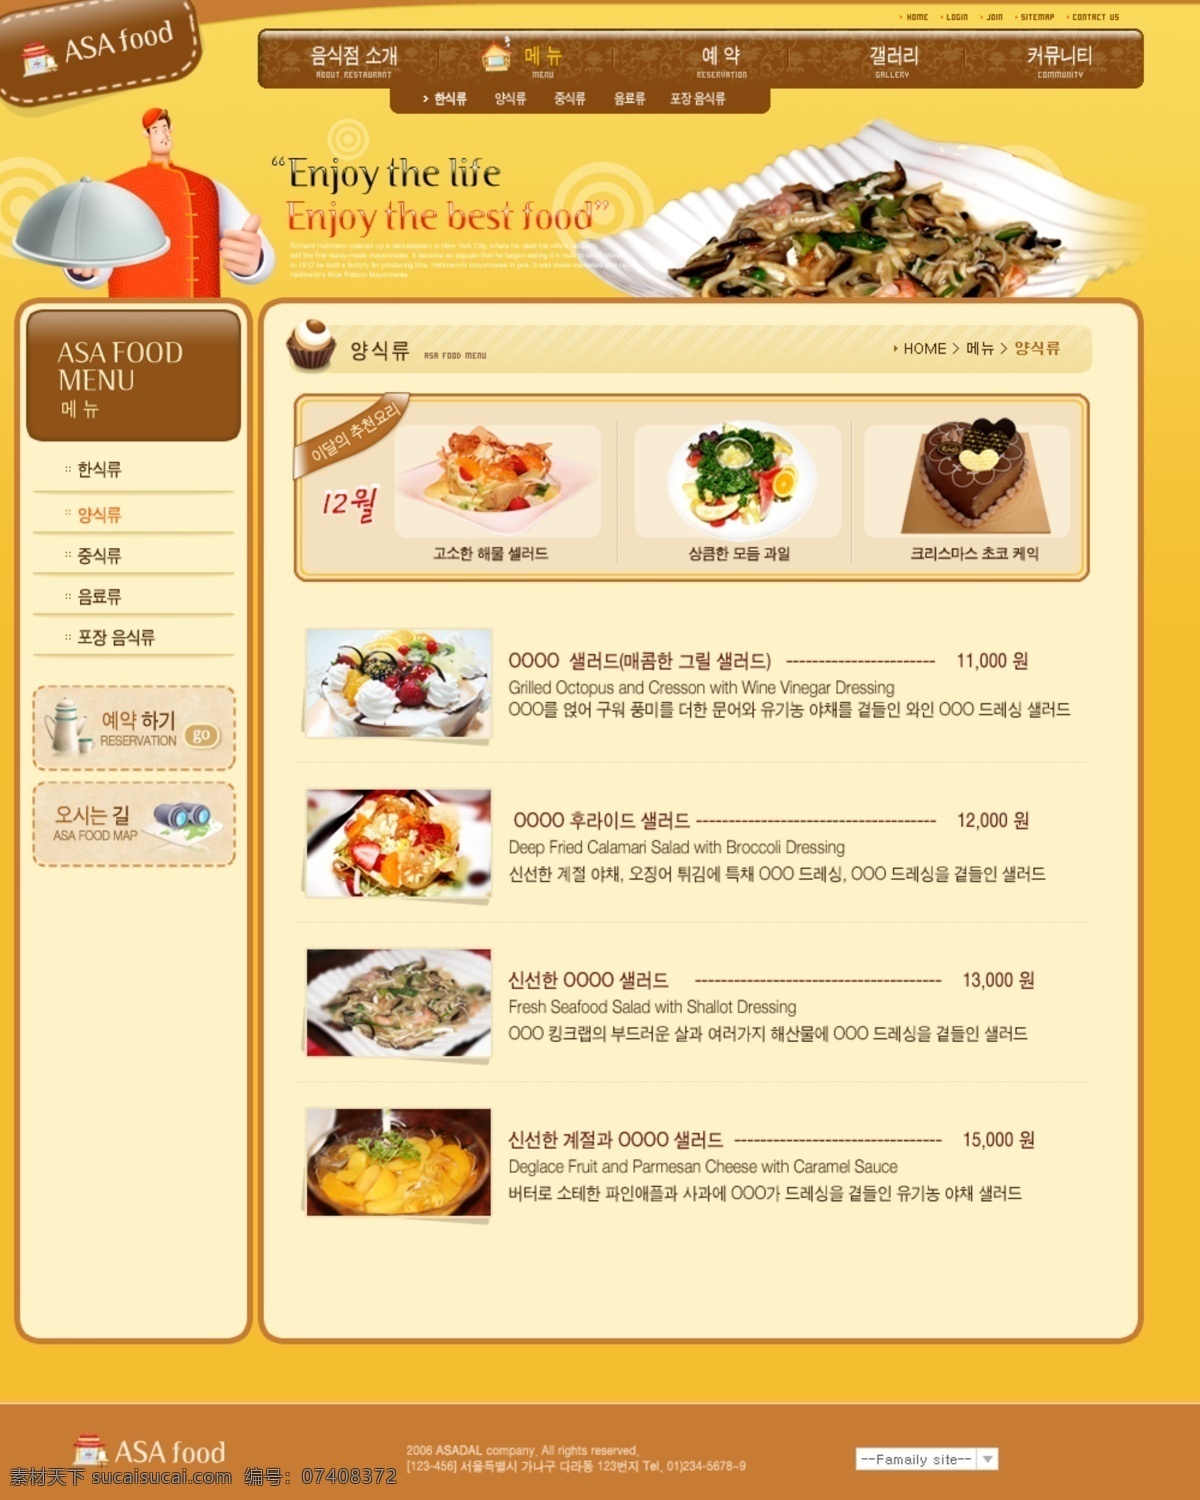 黄色背景 卡通小人 其他模板 食品 网页模板 网页设计 小吃 源文件 模板下载 网页素材